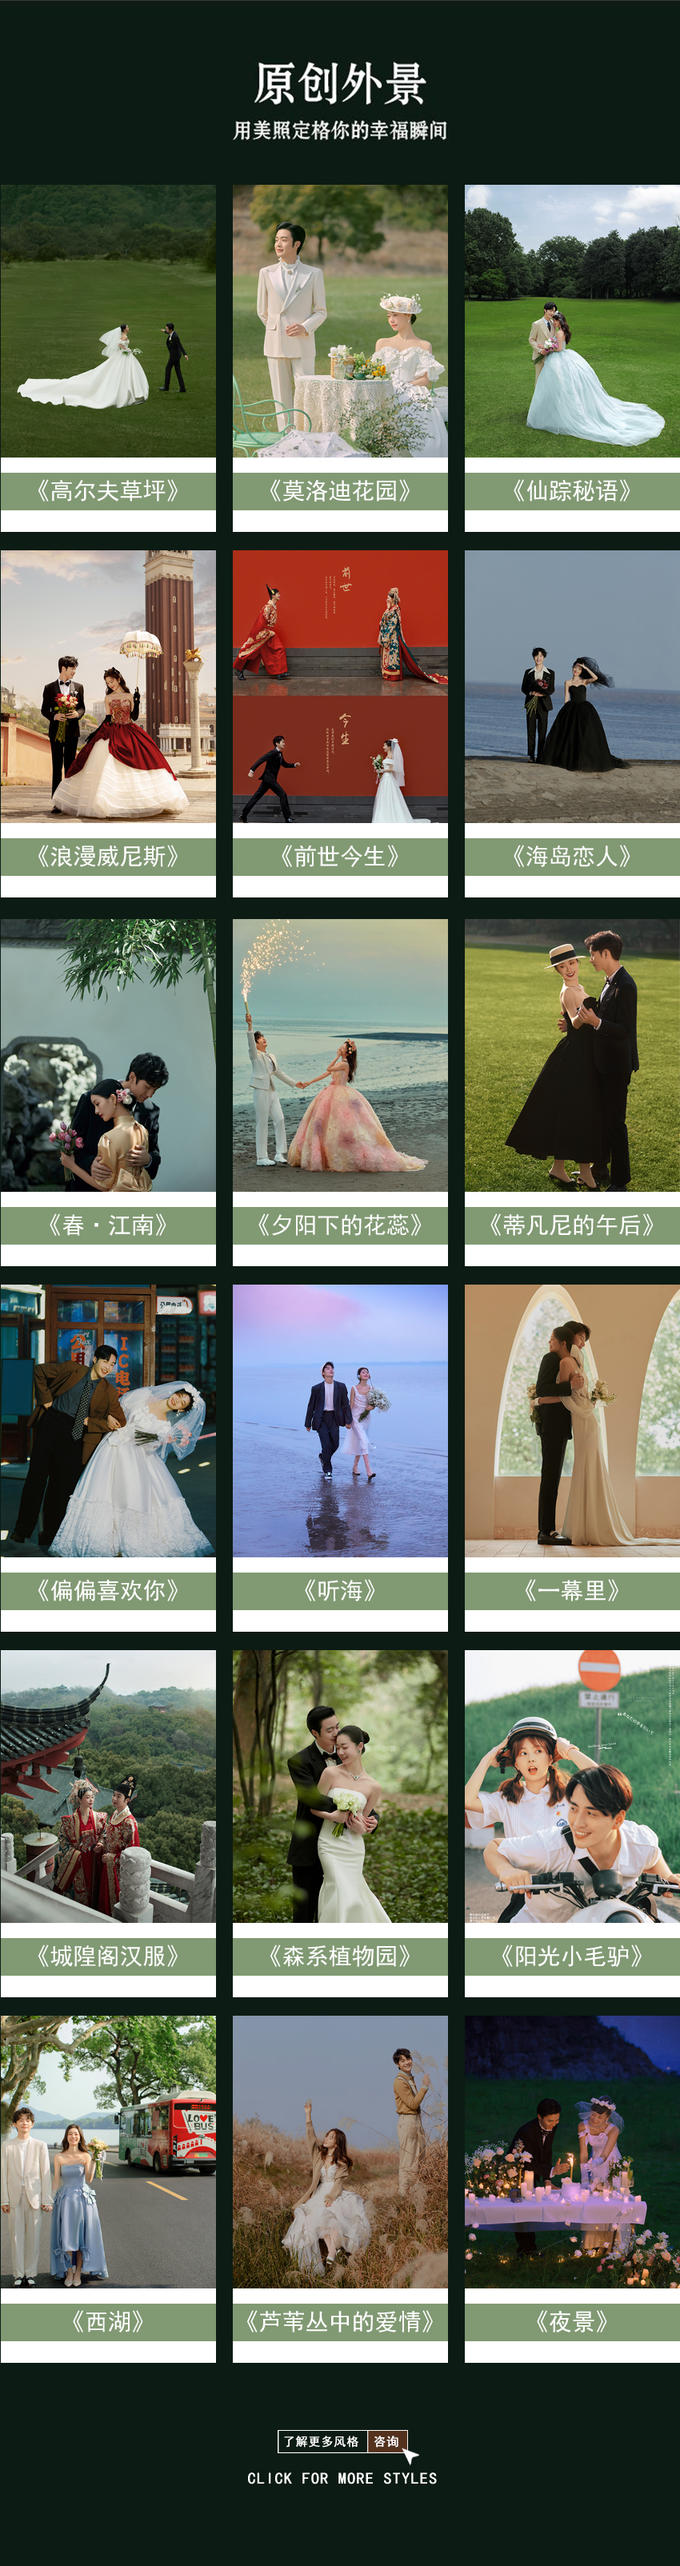 杭州高端婚纱照高级专属订制拍摄